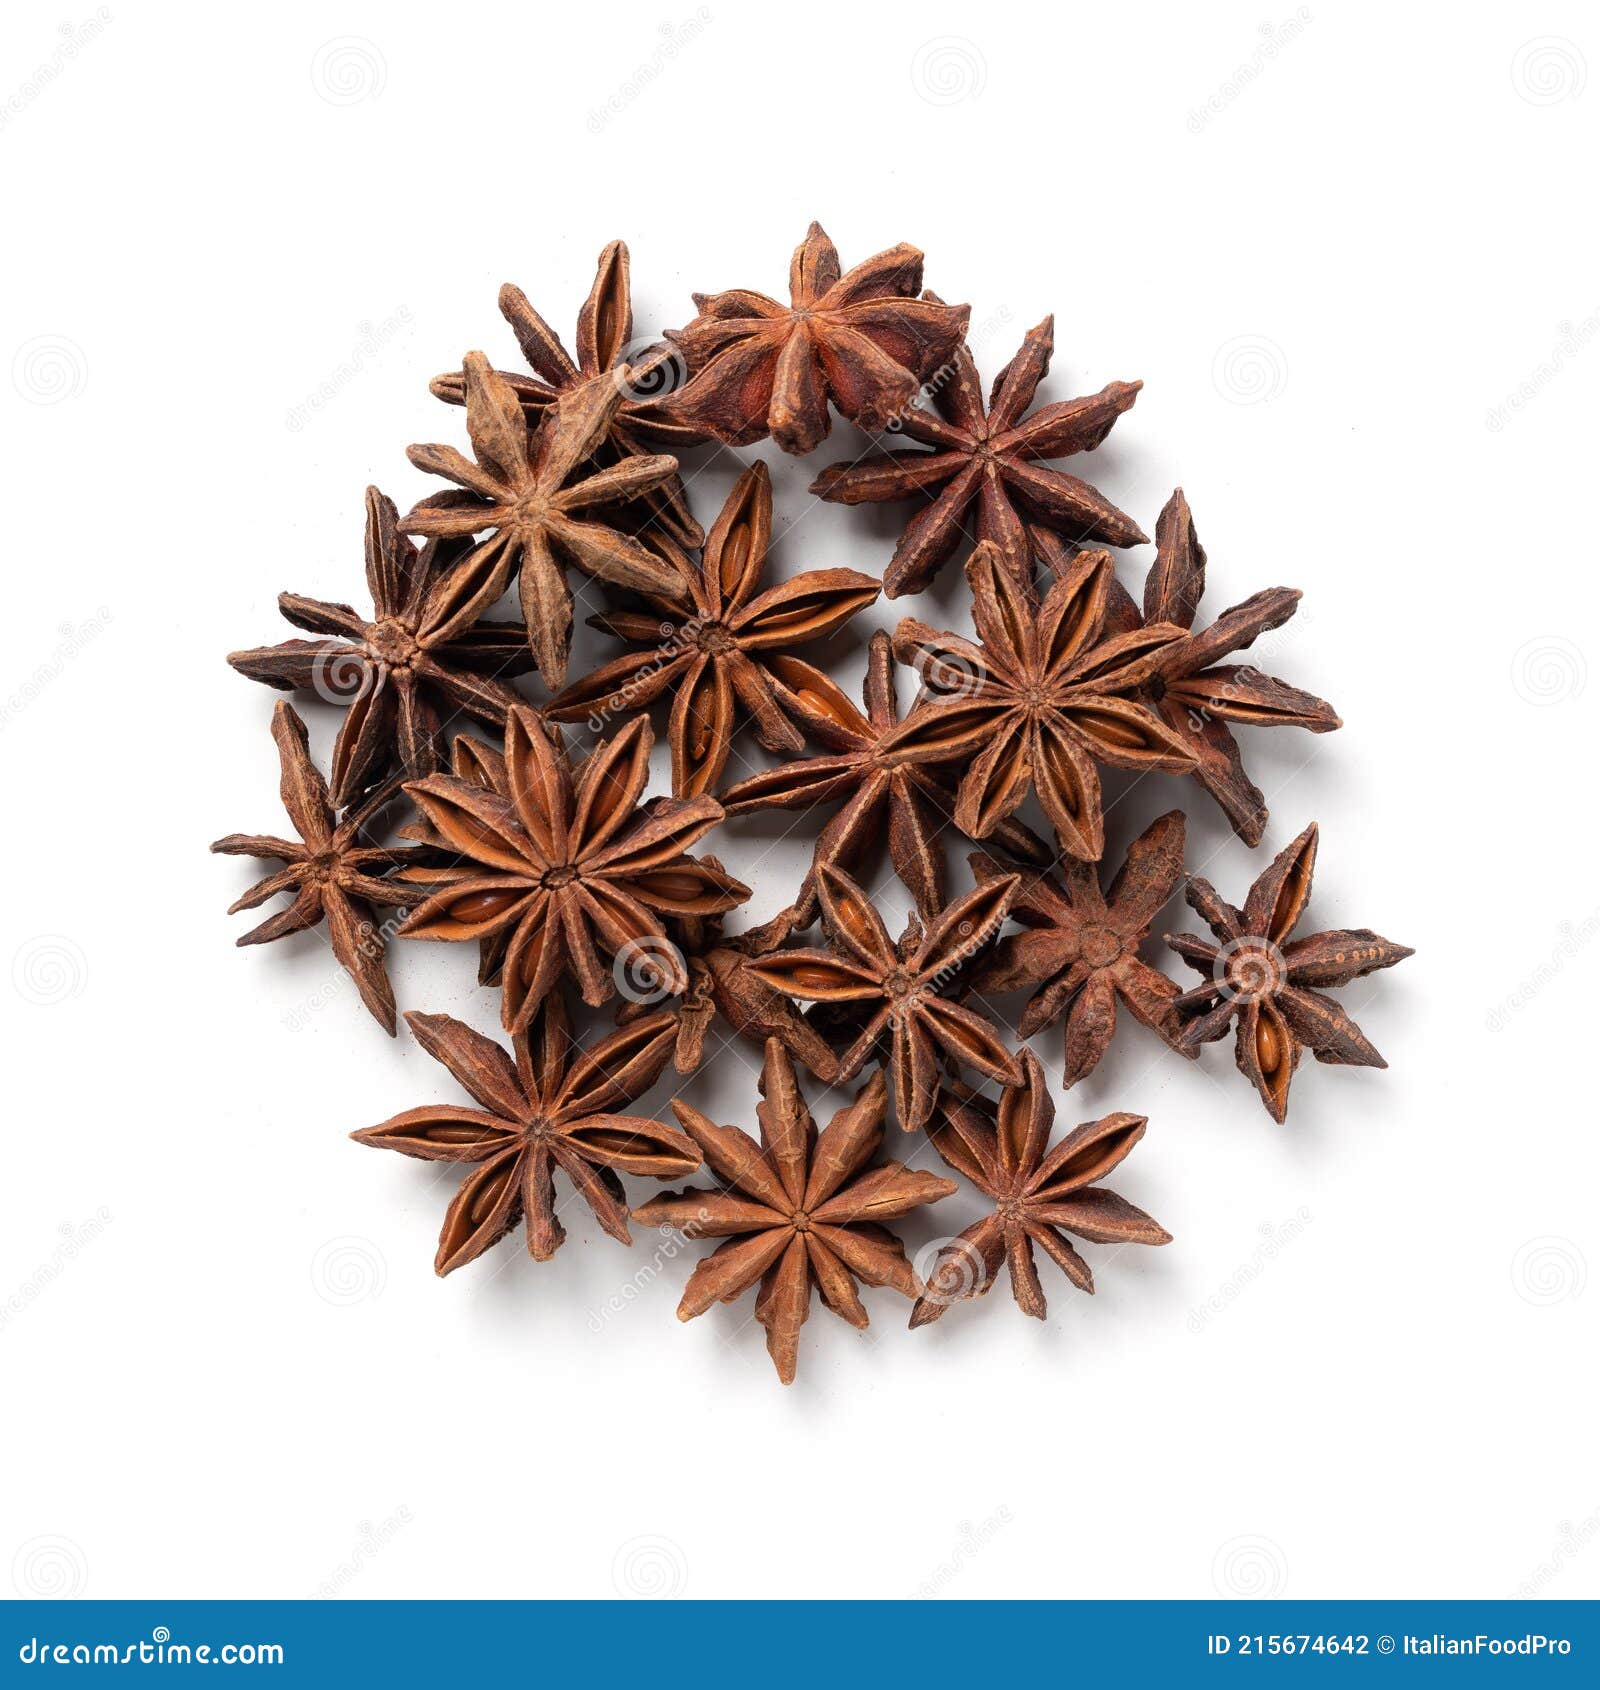 star anise Ã¢â¬â heap of chinese star aniseed, aromatic ingredient Ã¢â¬â top view